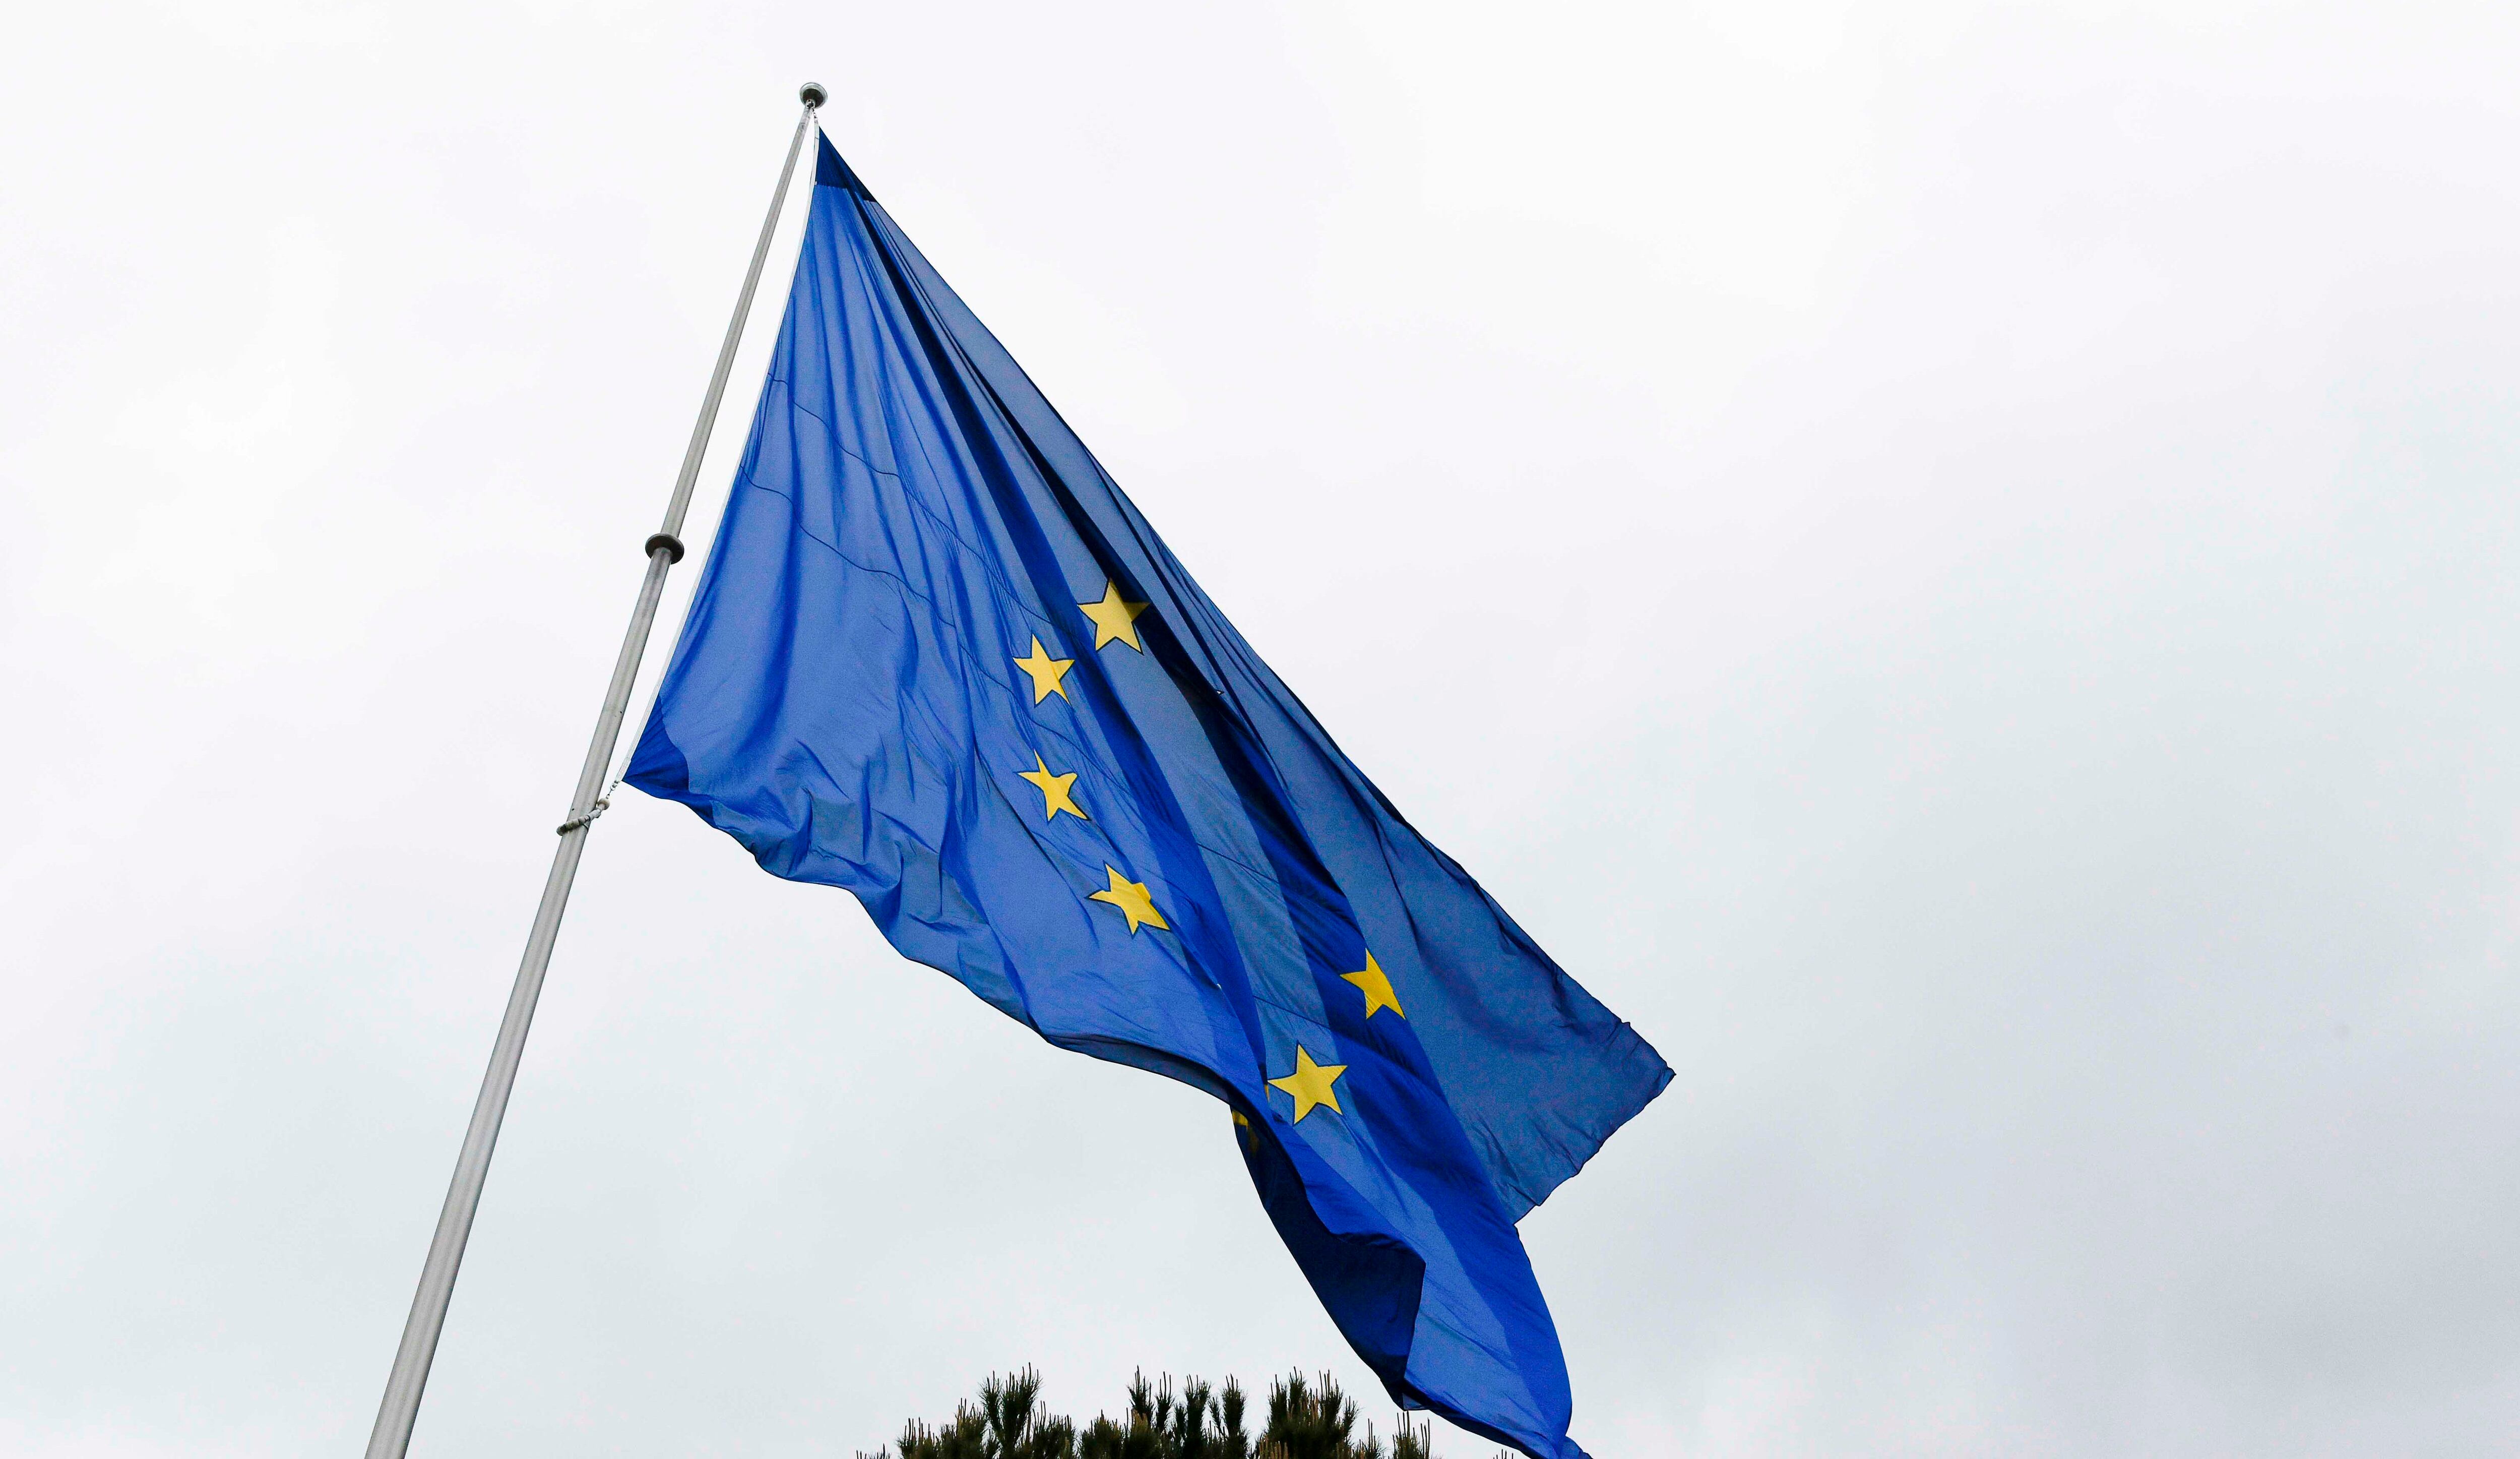 09-05-2018 Bandera de la Unión EuropeaPOLITICA ESPAÑA EUROPA MADRIDAYUNTAMIENTO DE BOADILLA